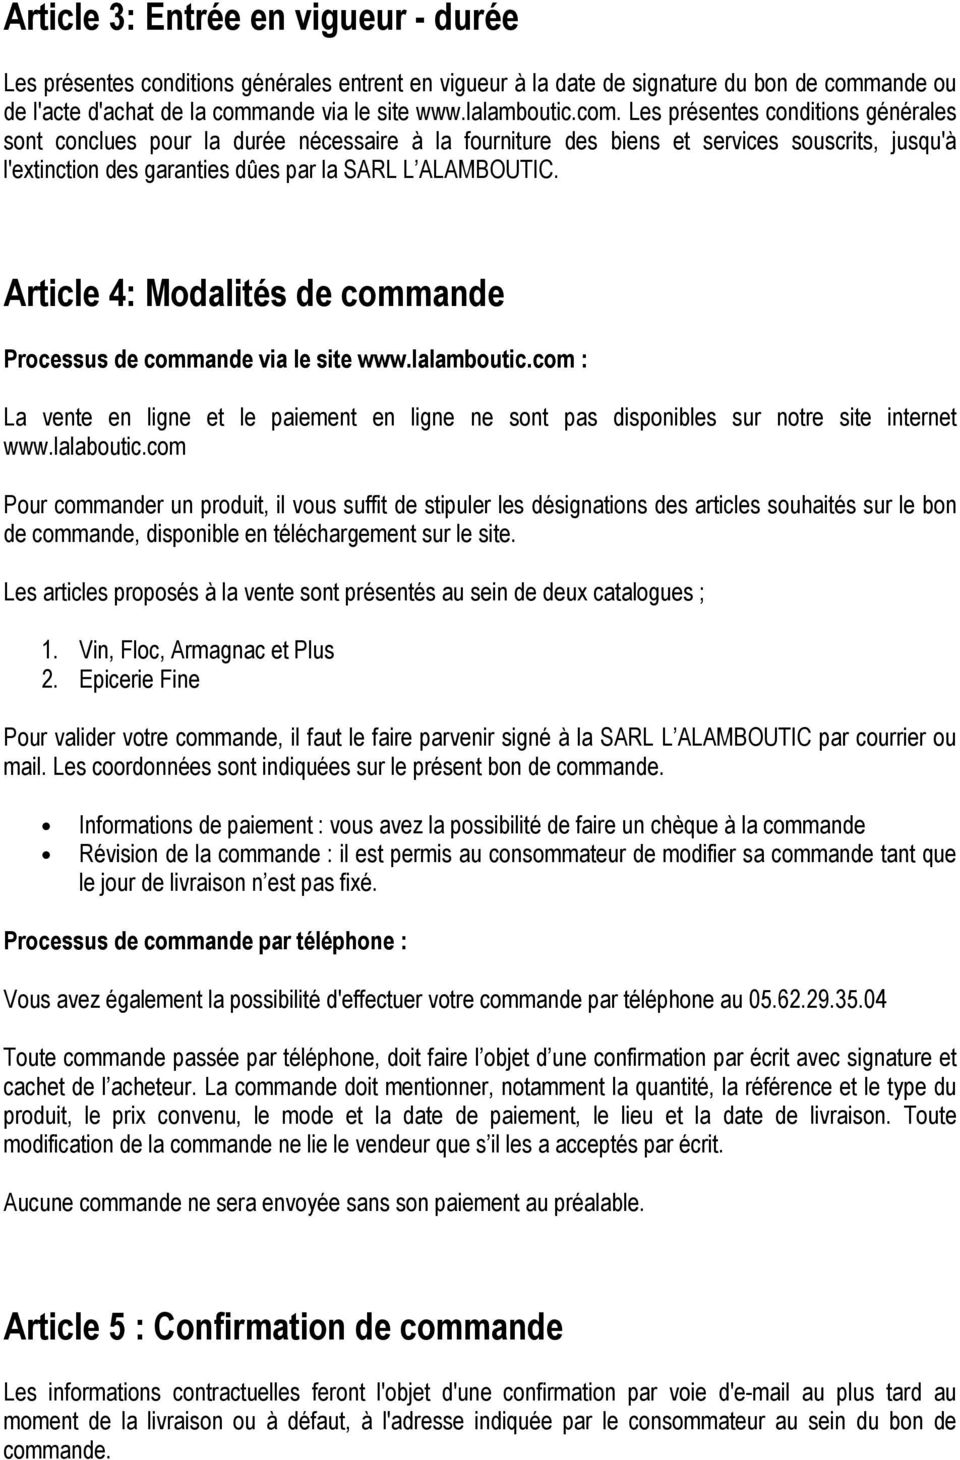 Article 4: Modalités de commande Processus de commande via le site www.lalamboutic.com : La vente en ligne et le paiement en ligne ne sont pas disponibles sur notre site internet www.lalaboutic.